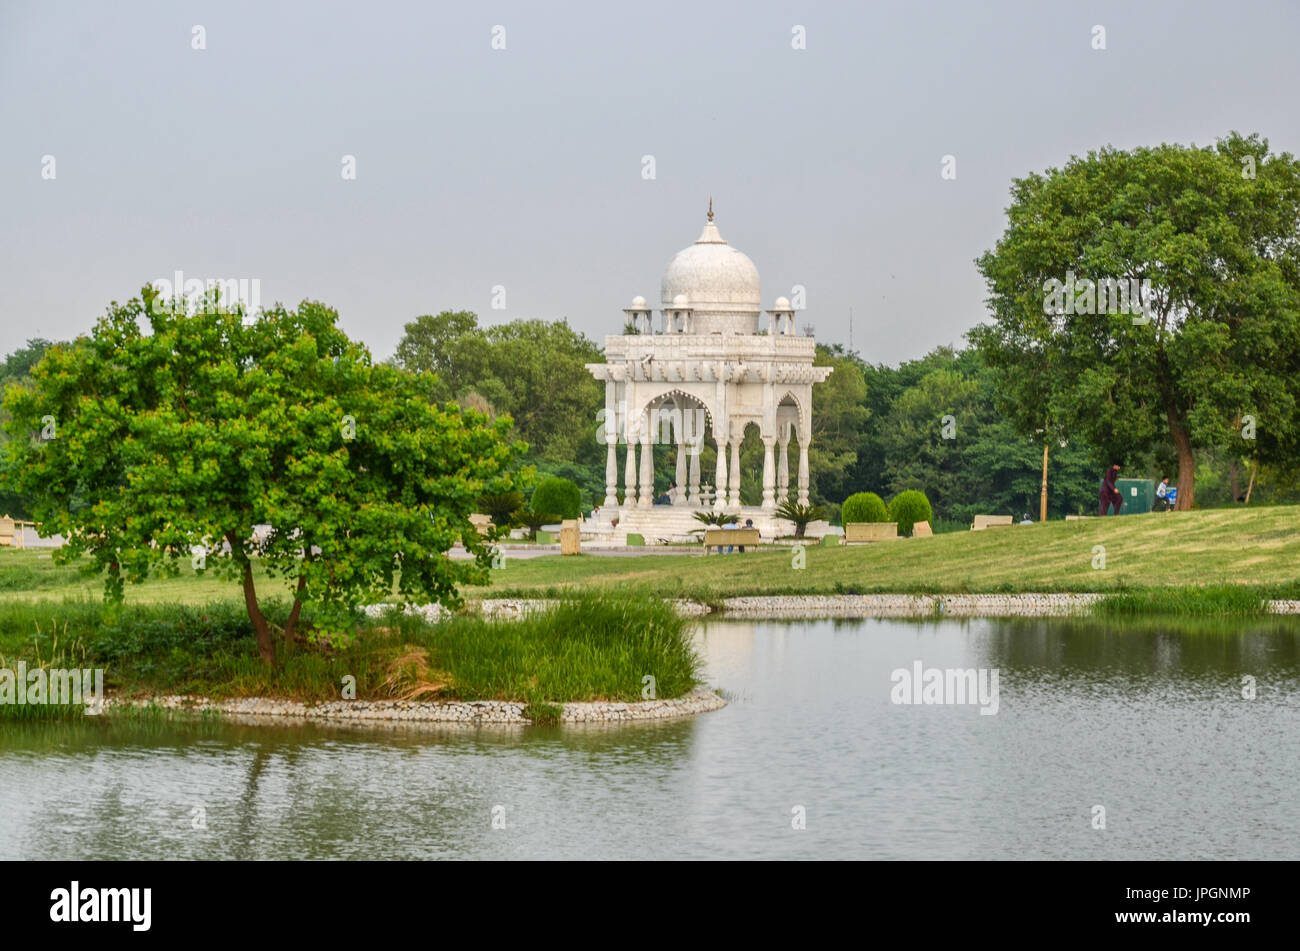 Fatima Jinnah Park, Islamabad, Pakistan Stock Photo